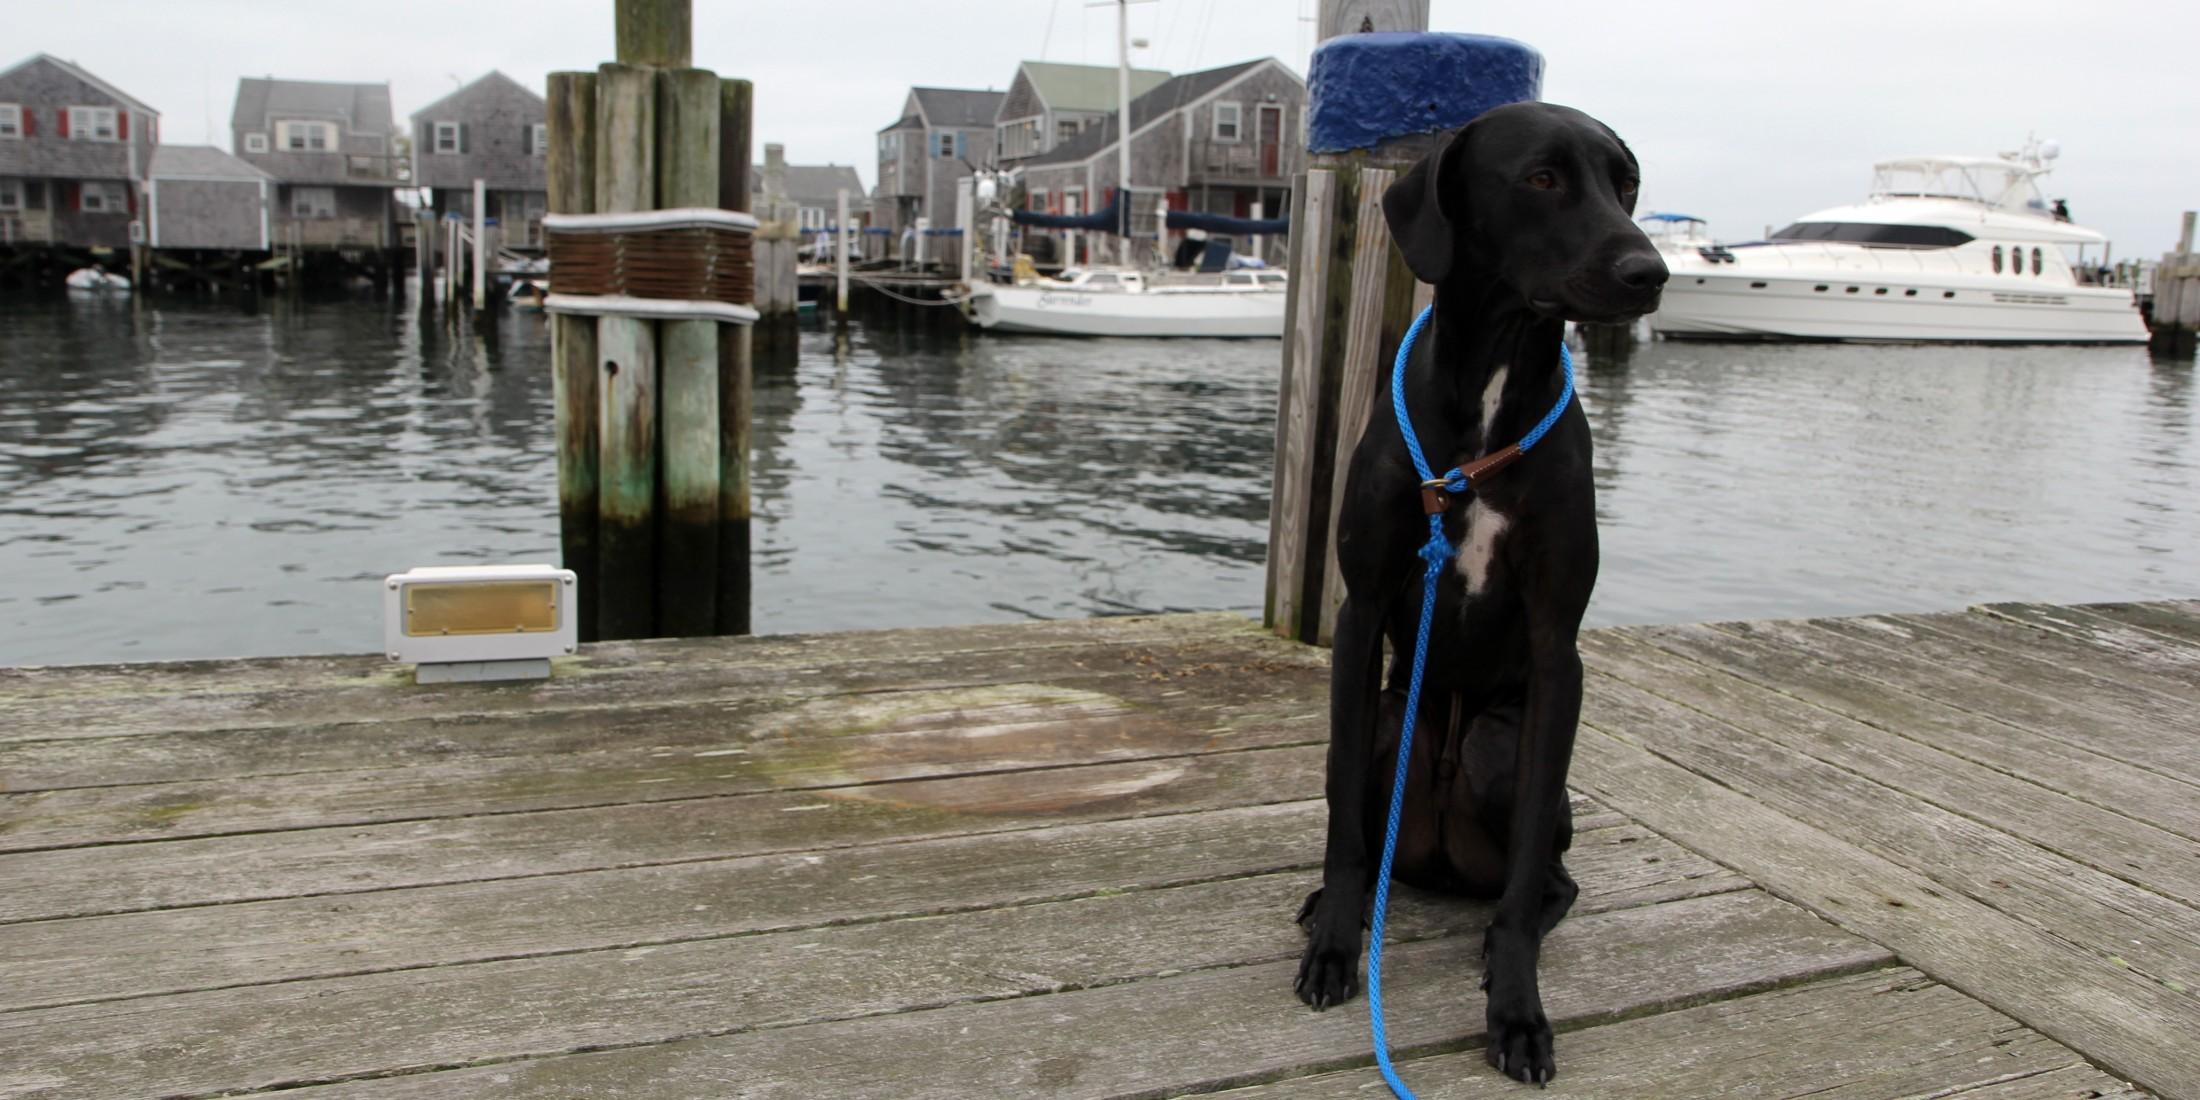 A Weekend in Dog-Friendly Nantucket